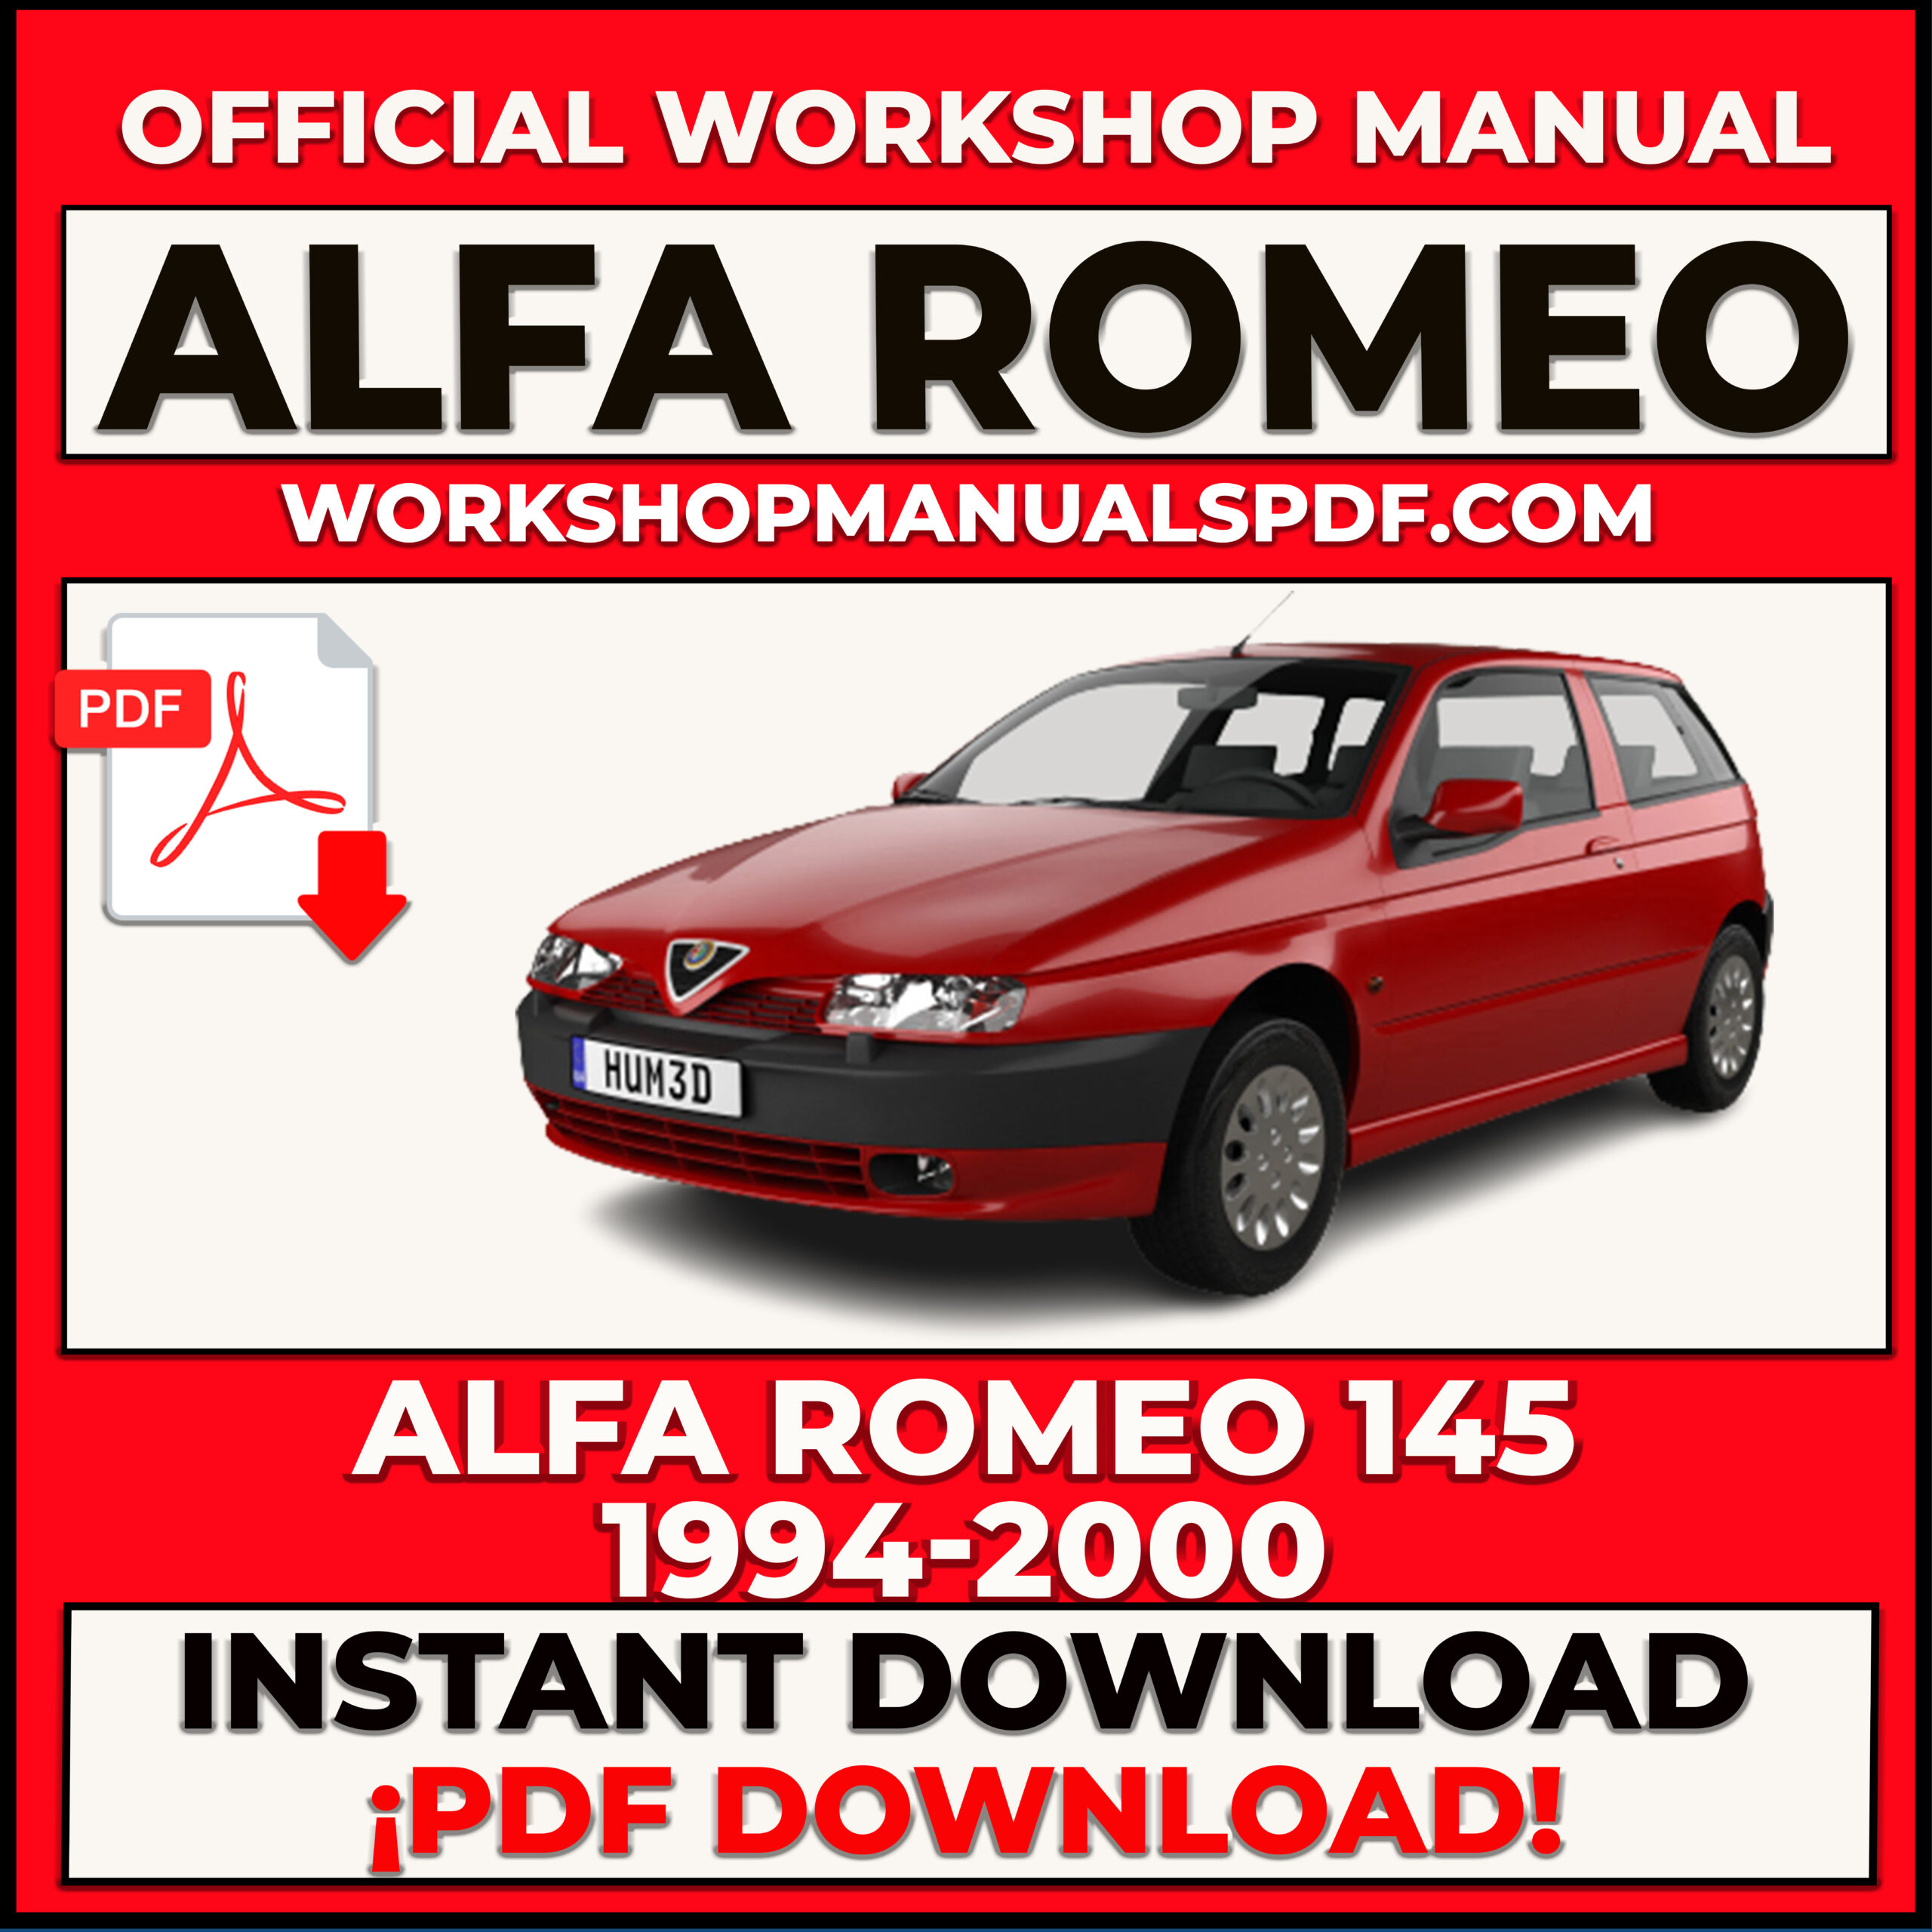 Alfa Romeo 145 Workshop Repair Manual